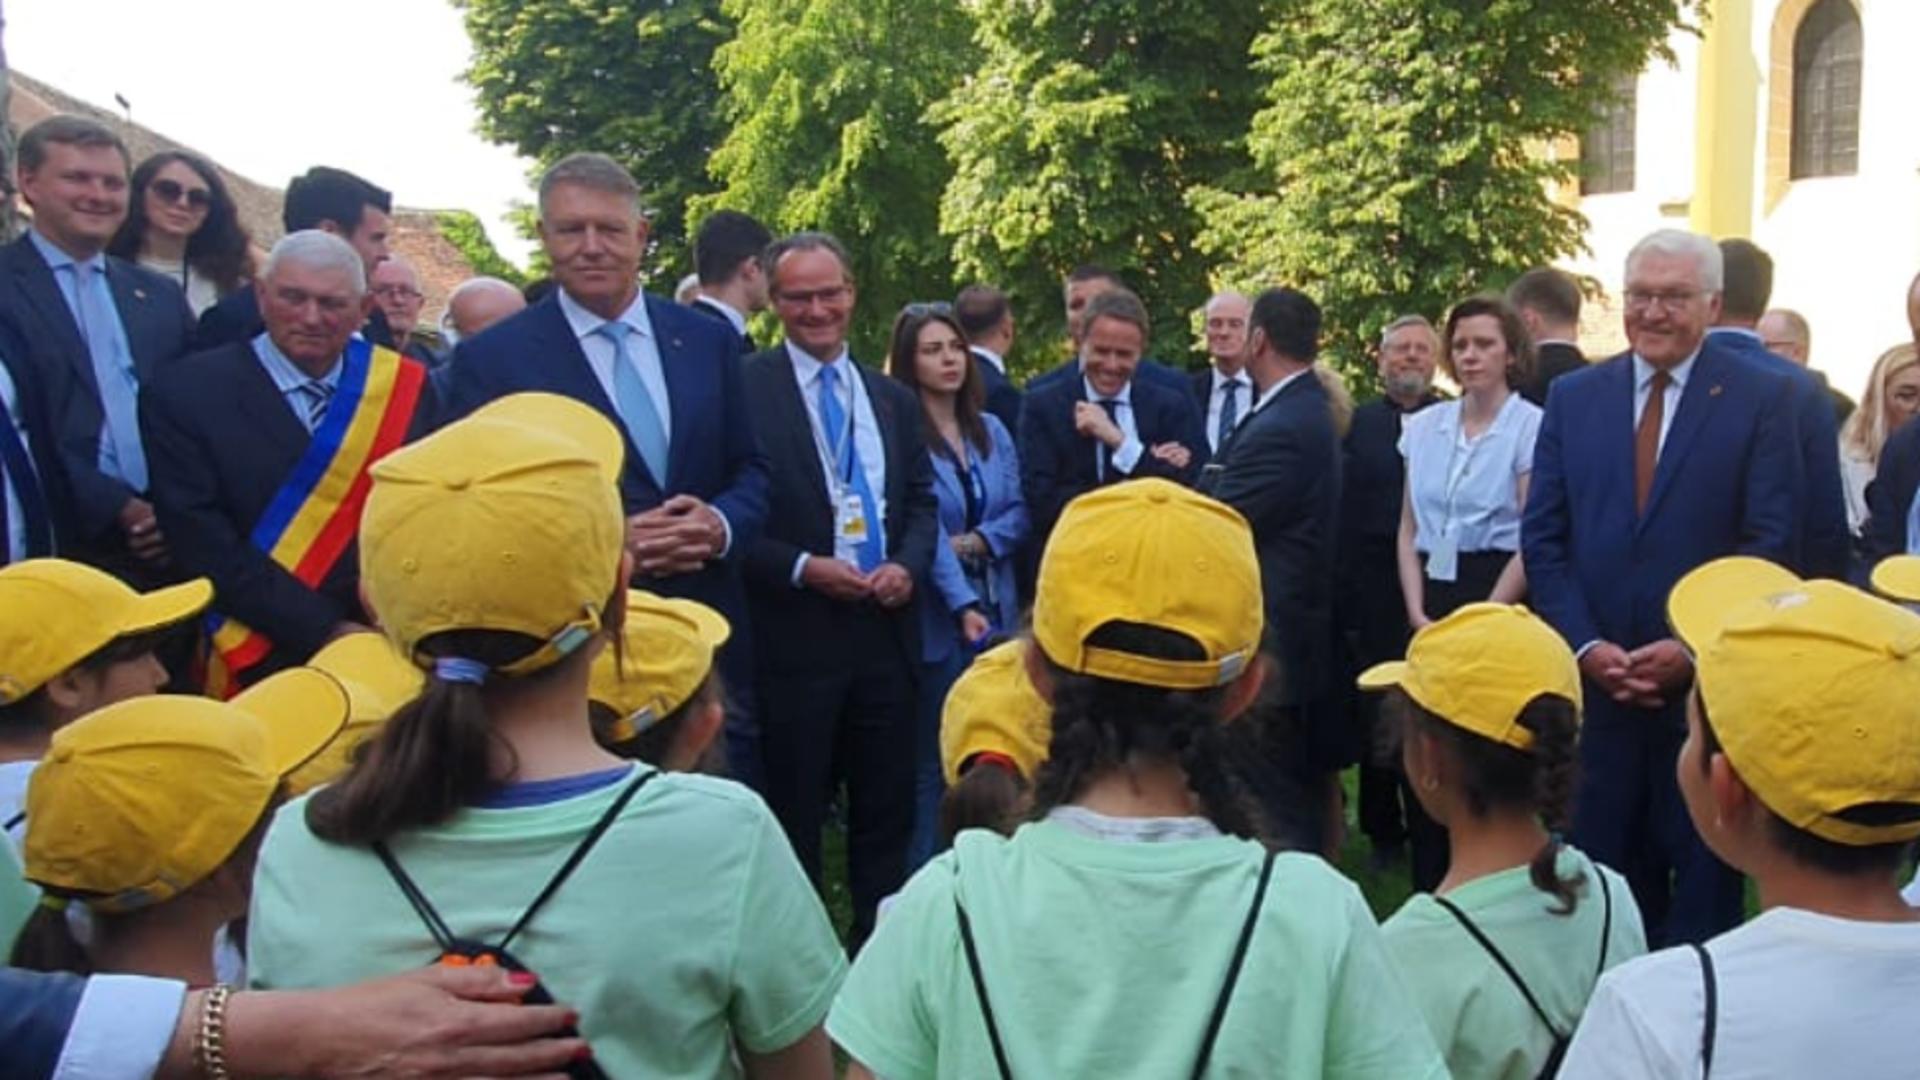 Klaus Iohannis, reacție după ce un grup de copii îi cântă „O lume minunată” în plină grevă a profesorilor - Momentul surprins la Cristian